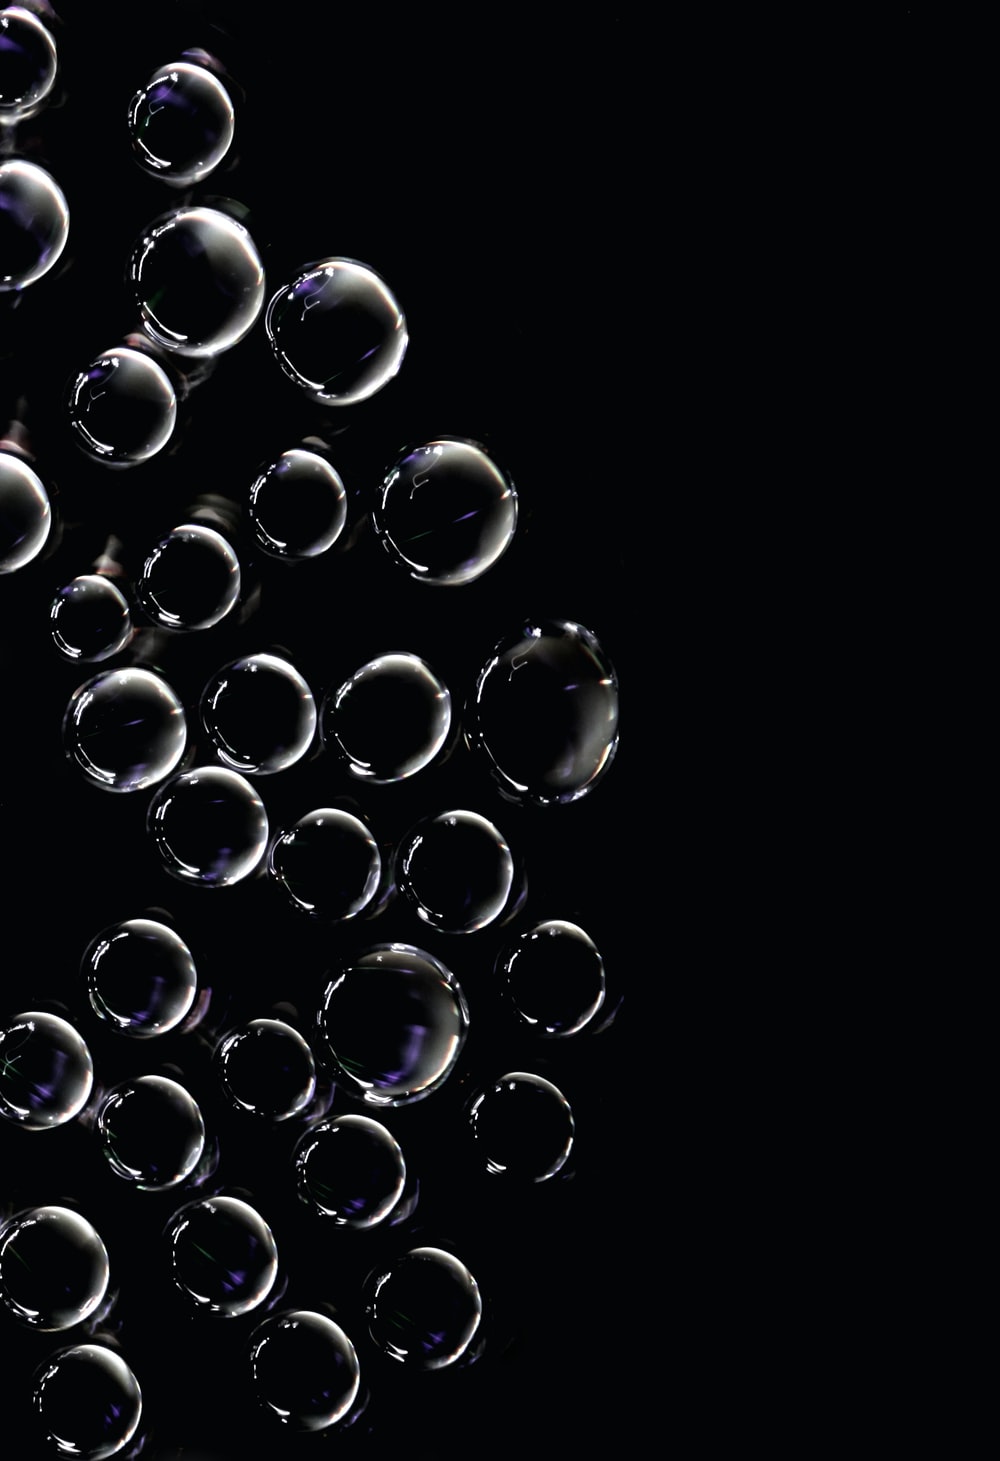 Best Bubble Pictures Image